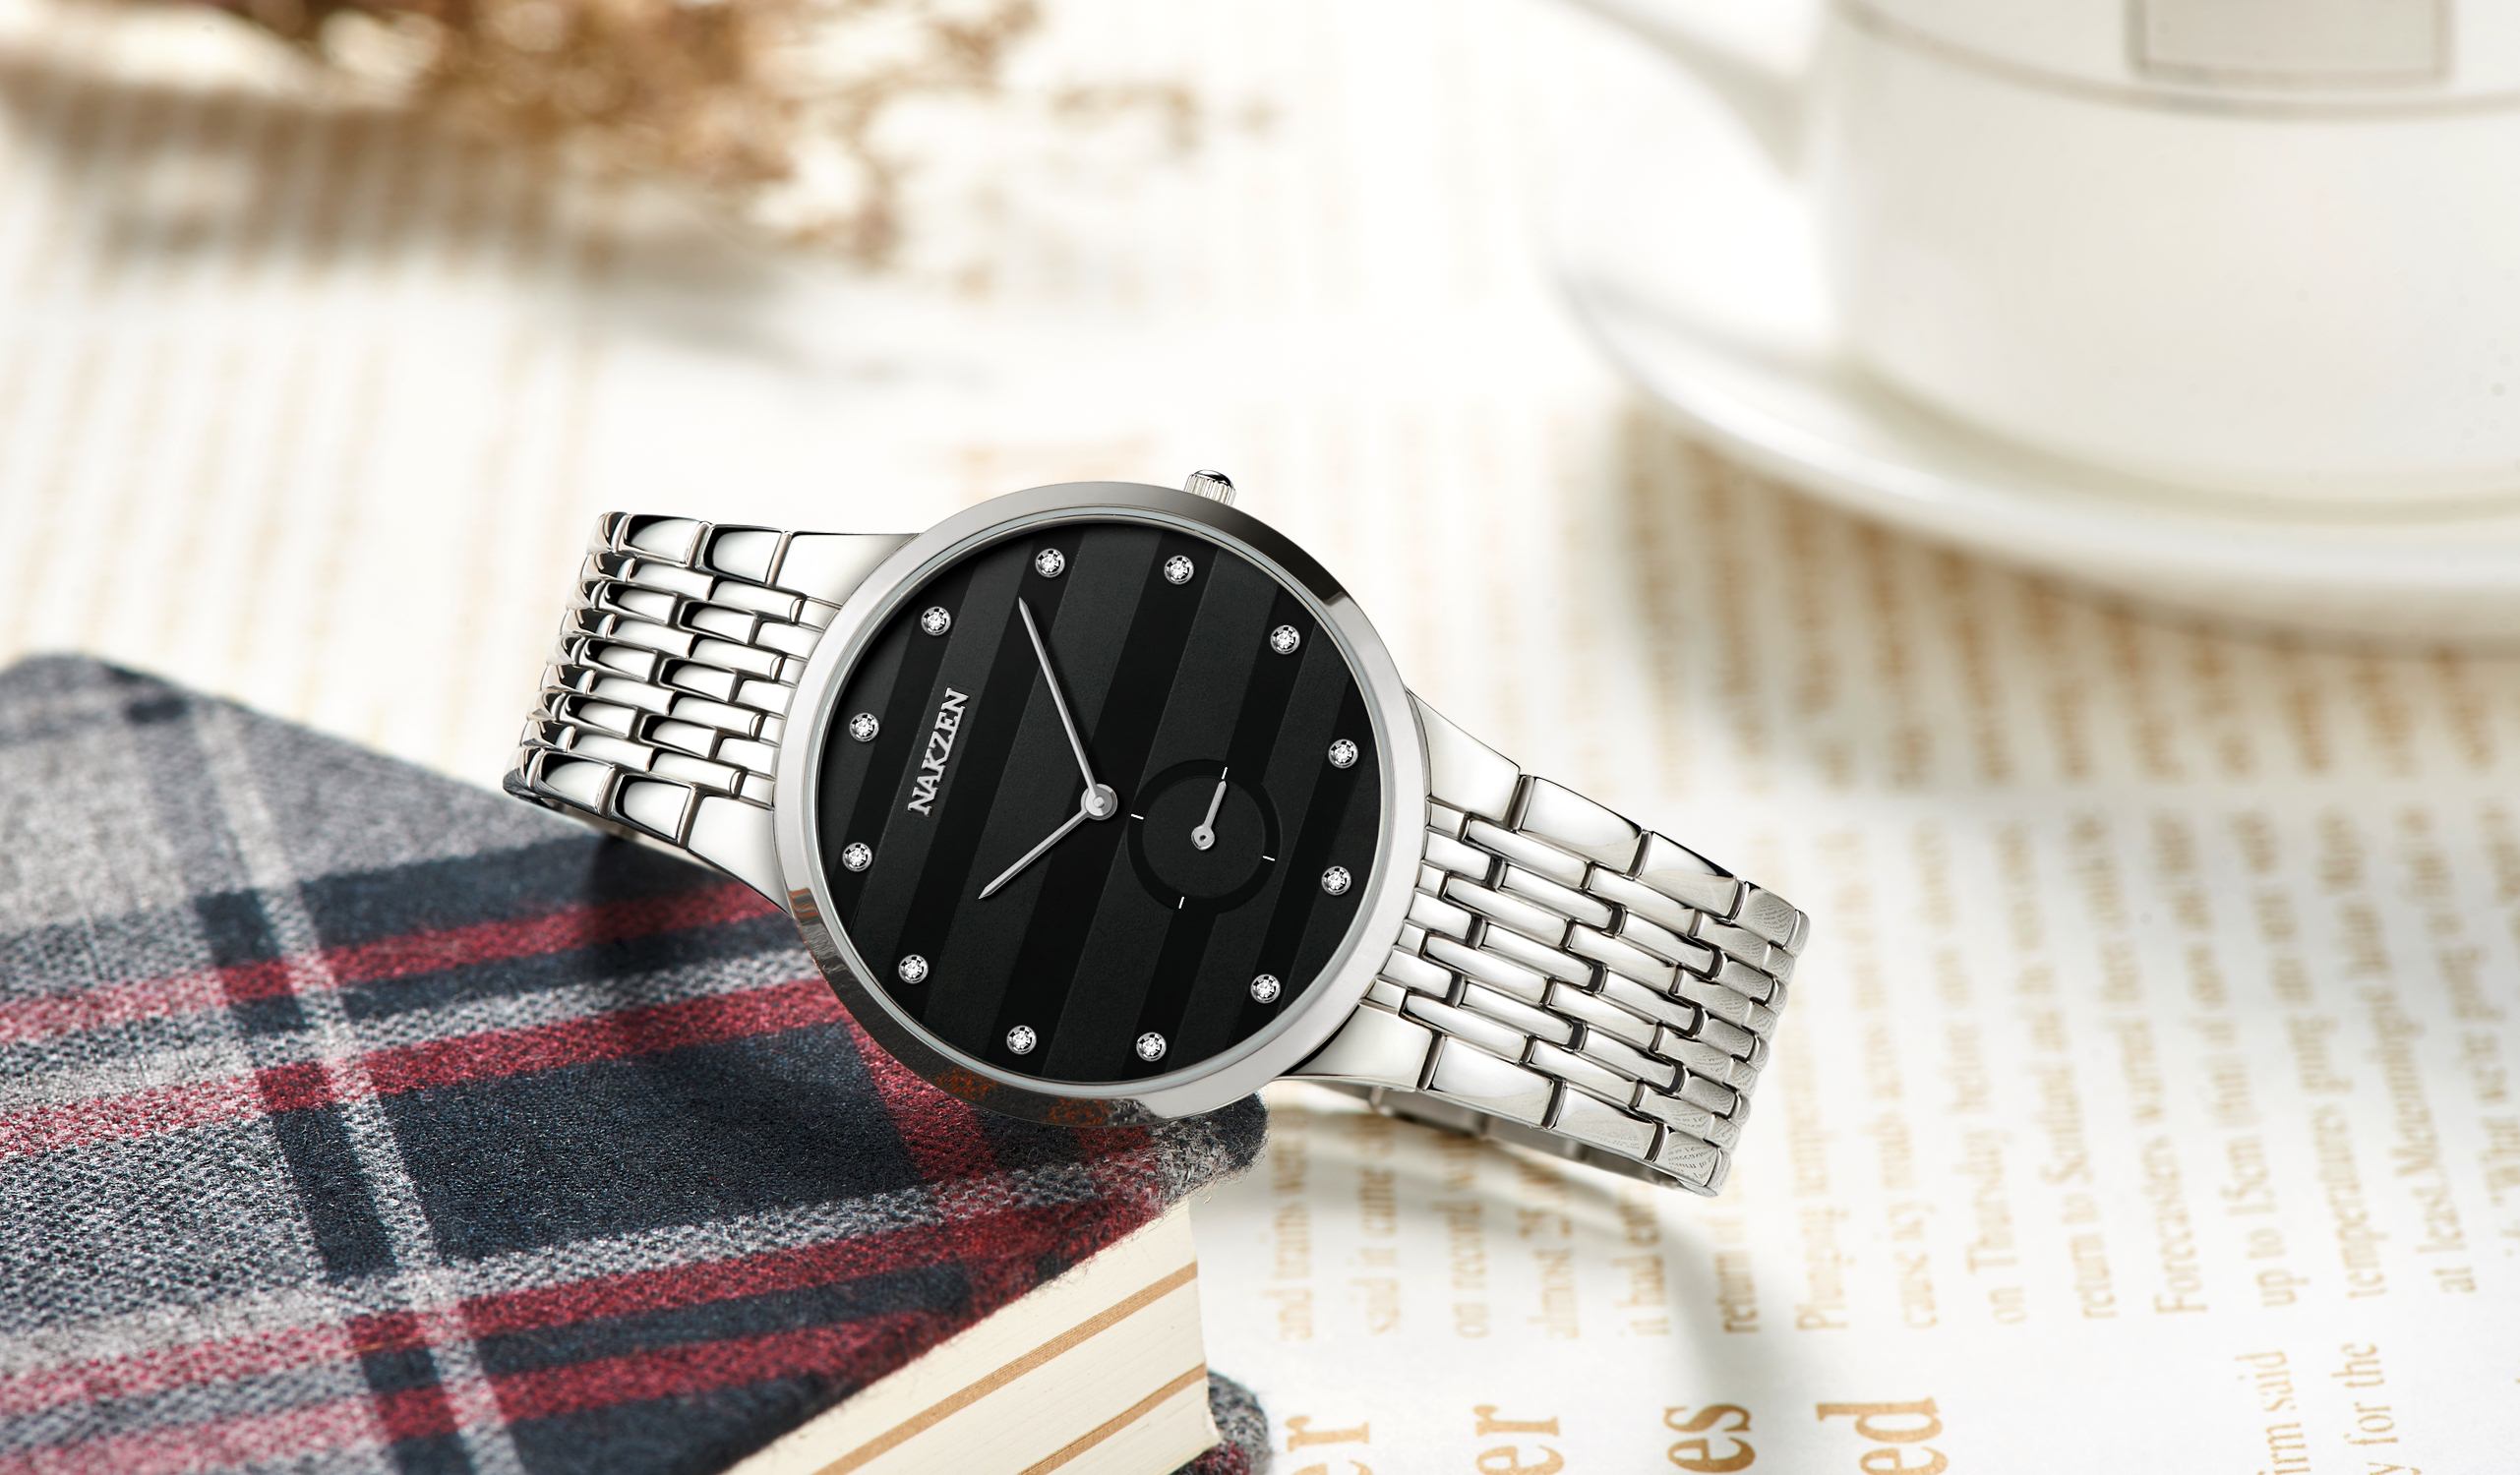  NAKZEN ダイヤモンドデザイン日本クォーツメンズ腕時計ブラックスリムステンレス鋼時計SS4036G-1  